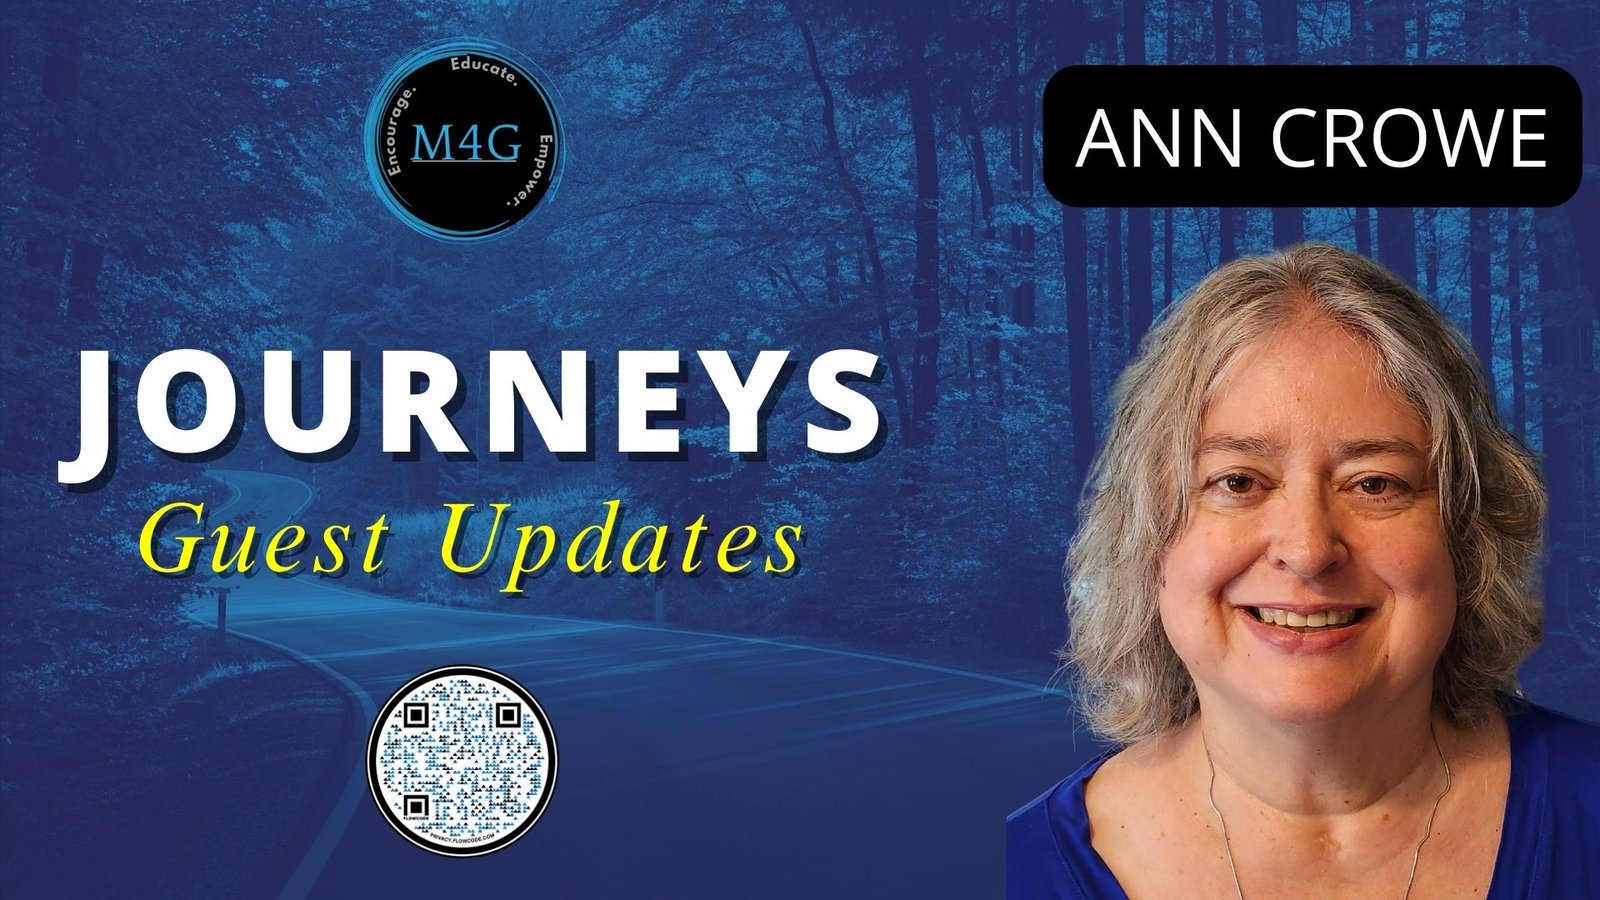 Journeys Guest Update - Ann Crowe